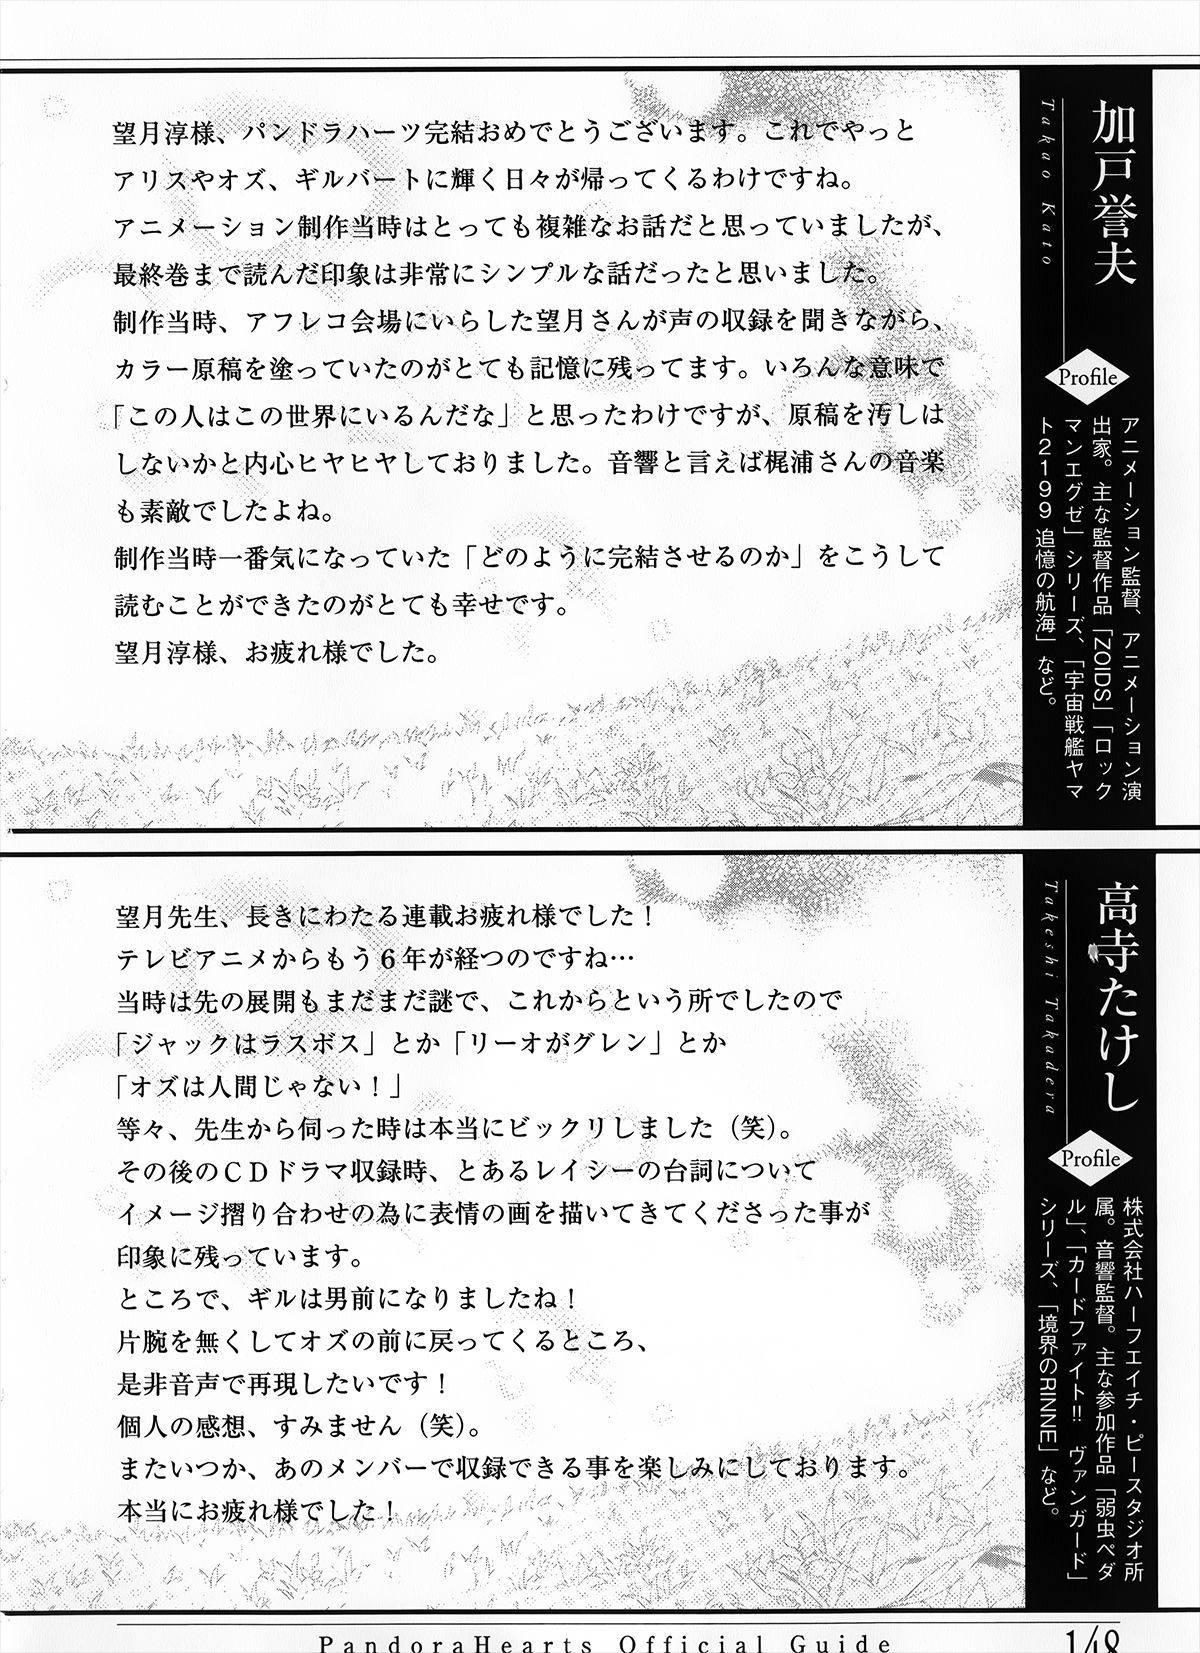 Pandora Hearts Guidebook 24+1: Last Dance パンドラハーツ オフィシャルガイド 24 + 1 ~Last Dance! 152